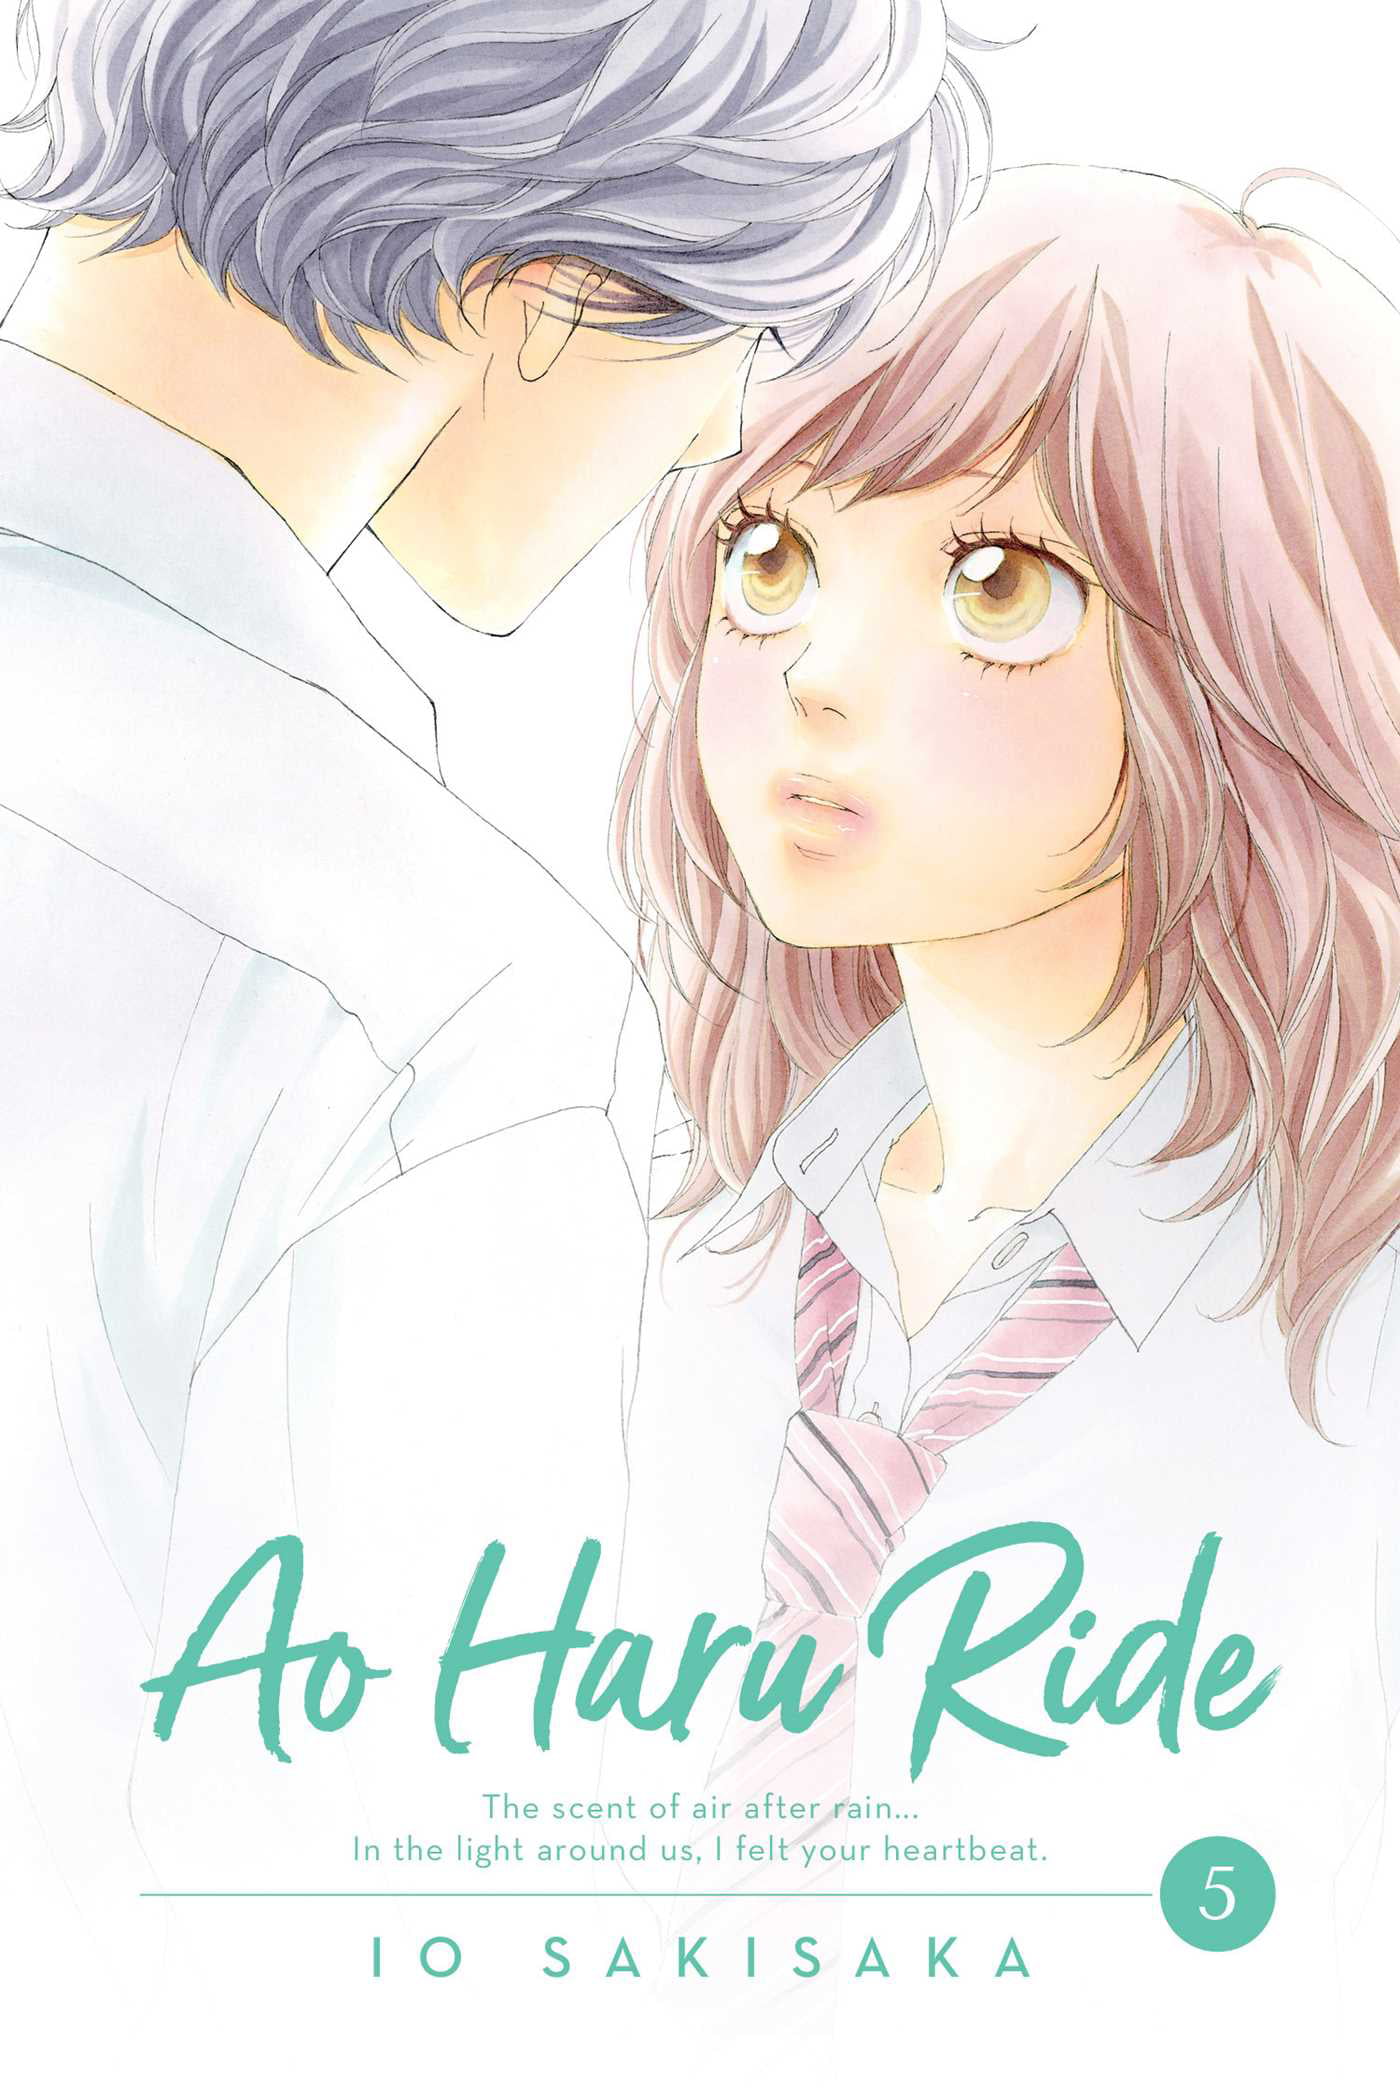 Ao Haru Ride Ep. 5: The proper context